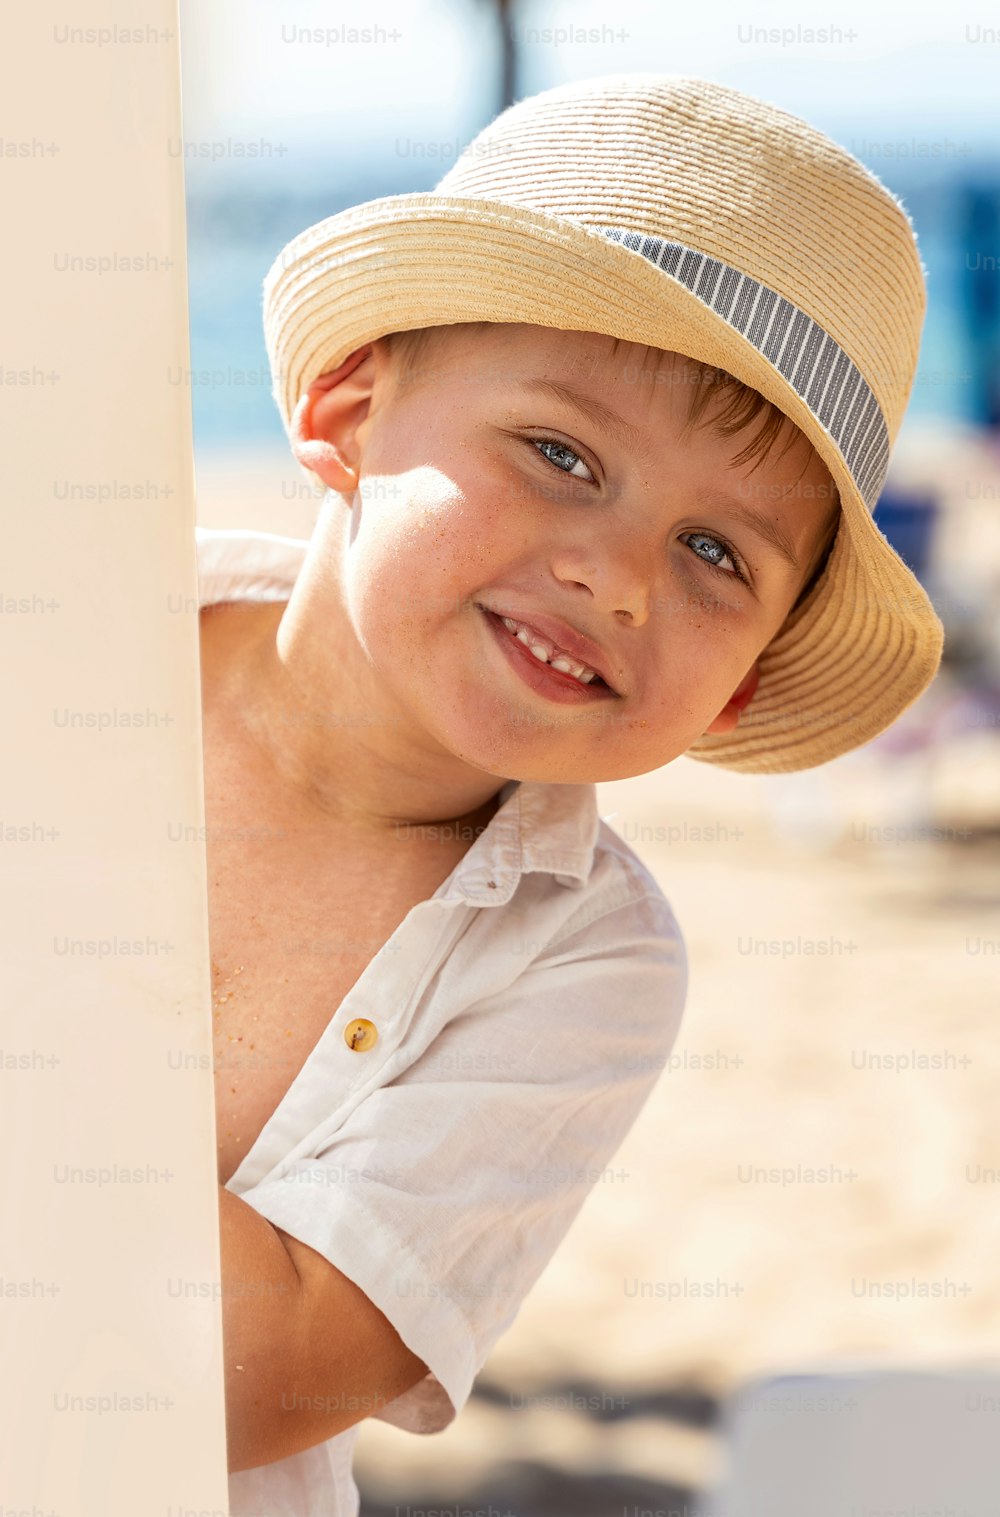 熱帯の砂浜で遊ぶ帽子をかぶった笑顔の少年。夏の雰囲気。コピースペースがたくさんある。